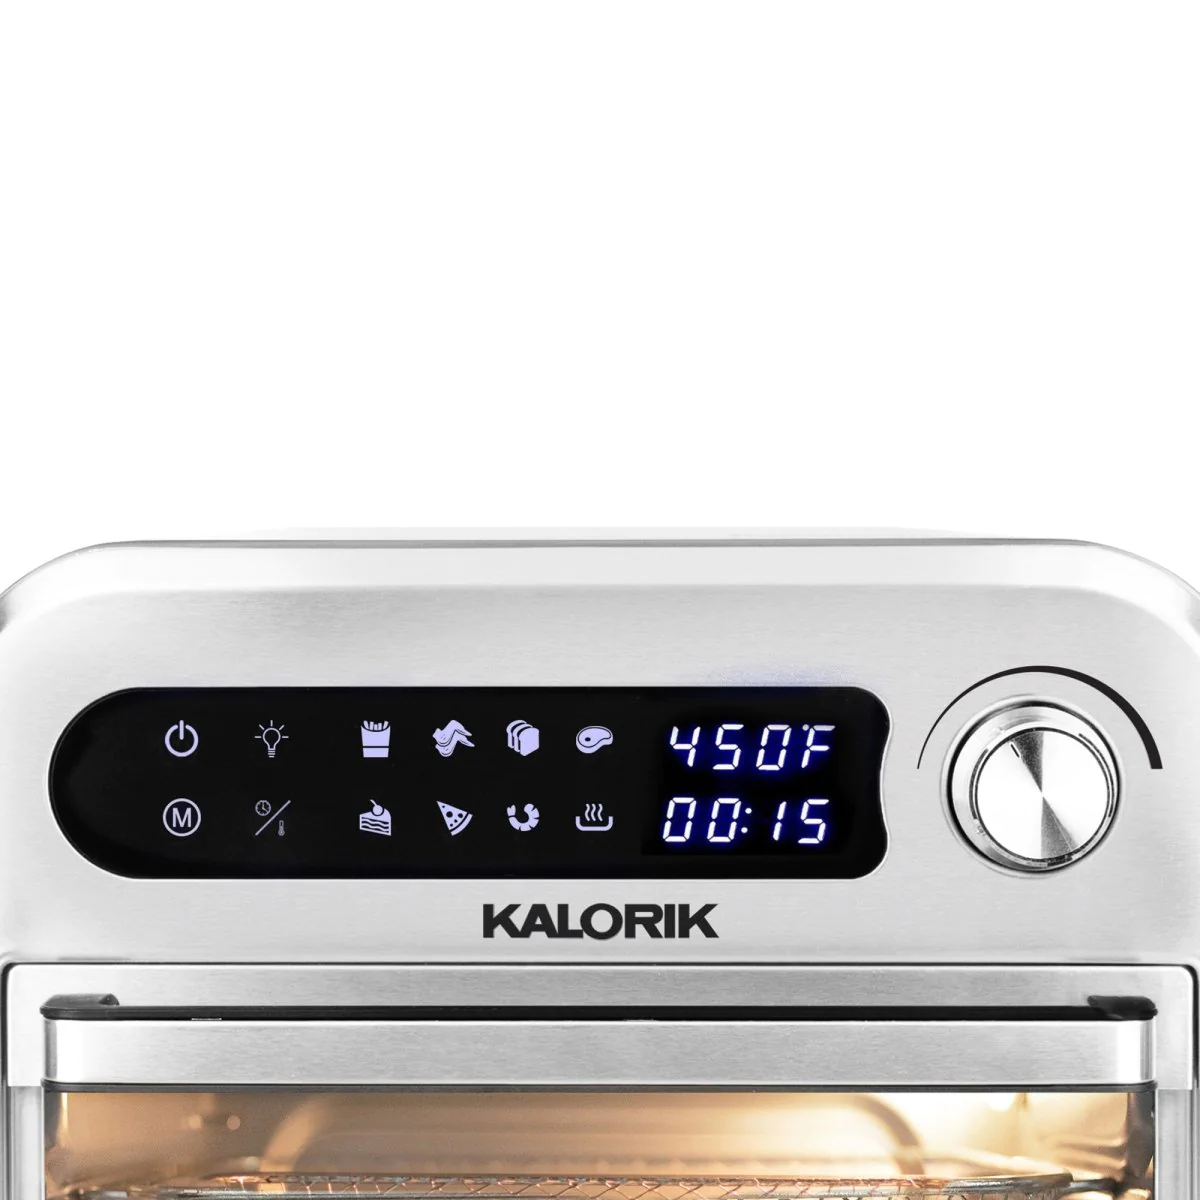 Kalorik 12.6qt. Digital Air Fryer And Oven